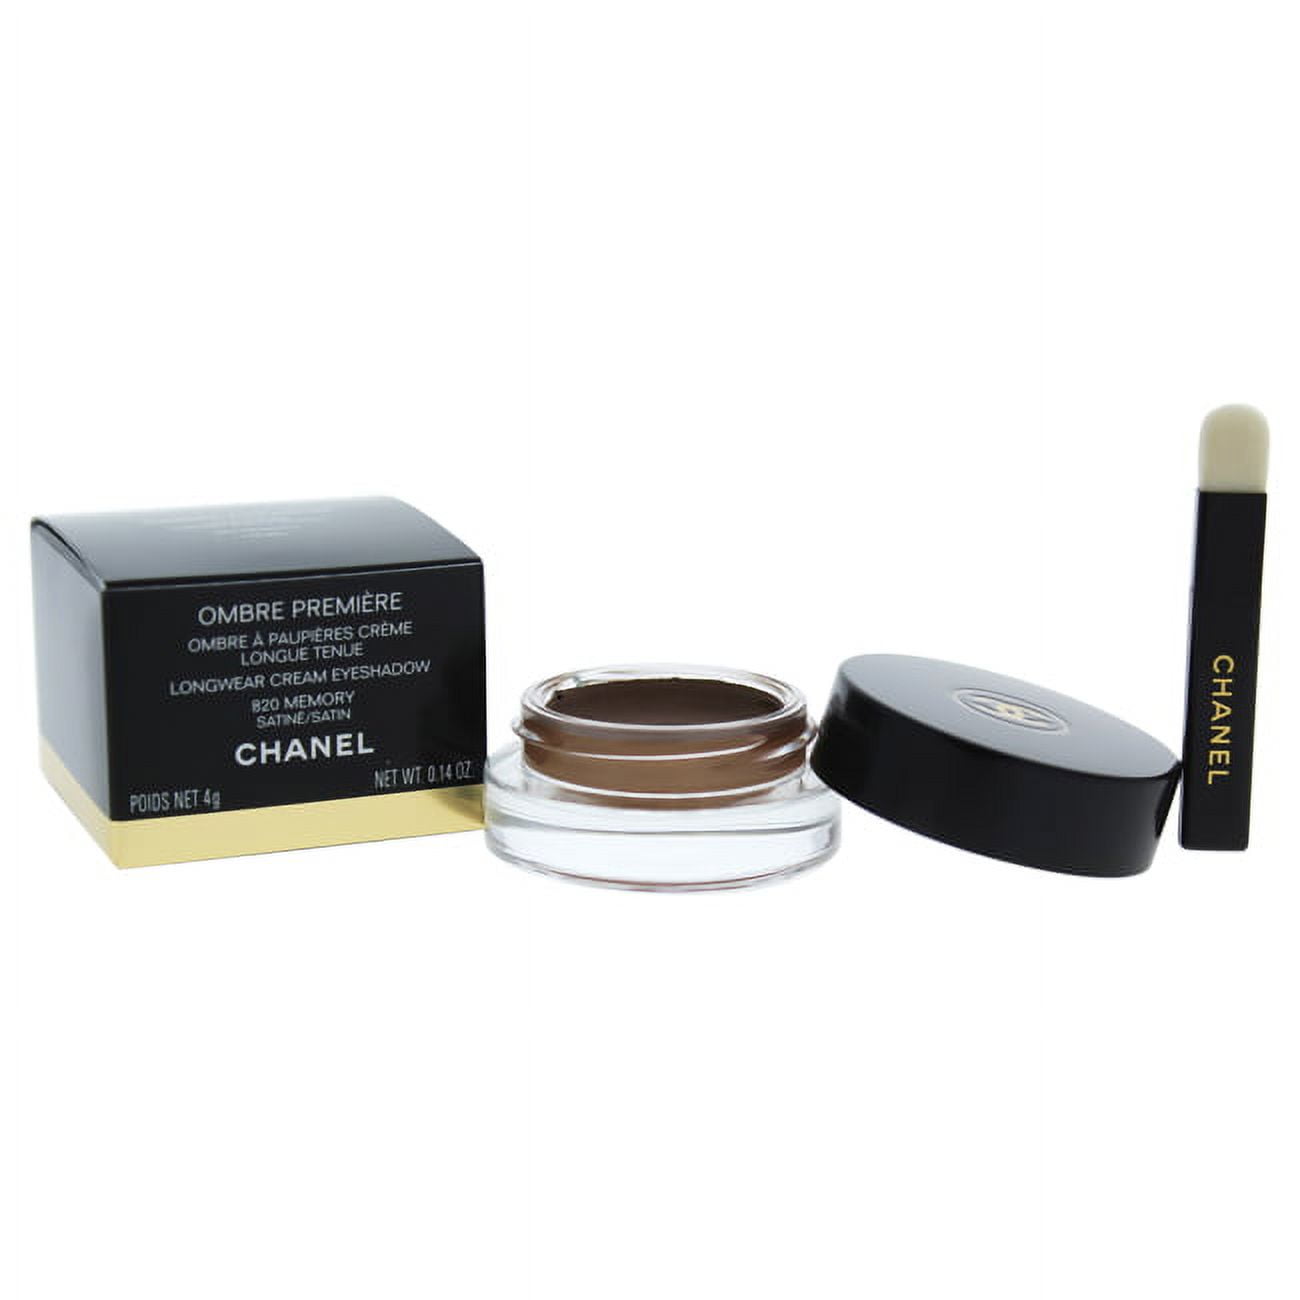 Chanel Ombre Premiere Longwear Cream Eyeshadow - 820 Memory 0.14